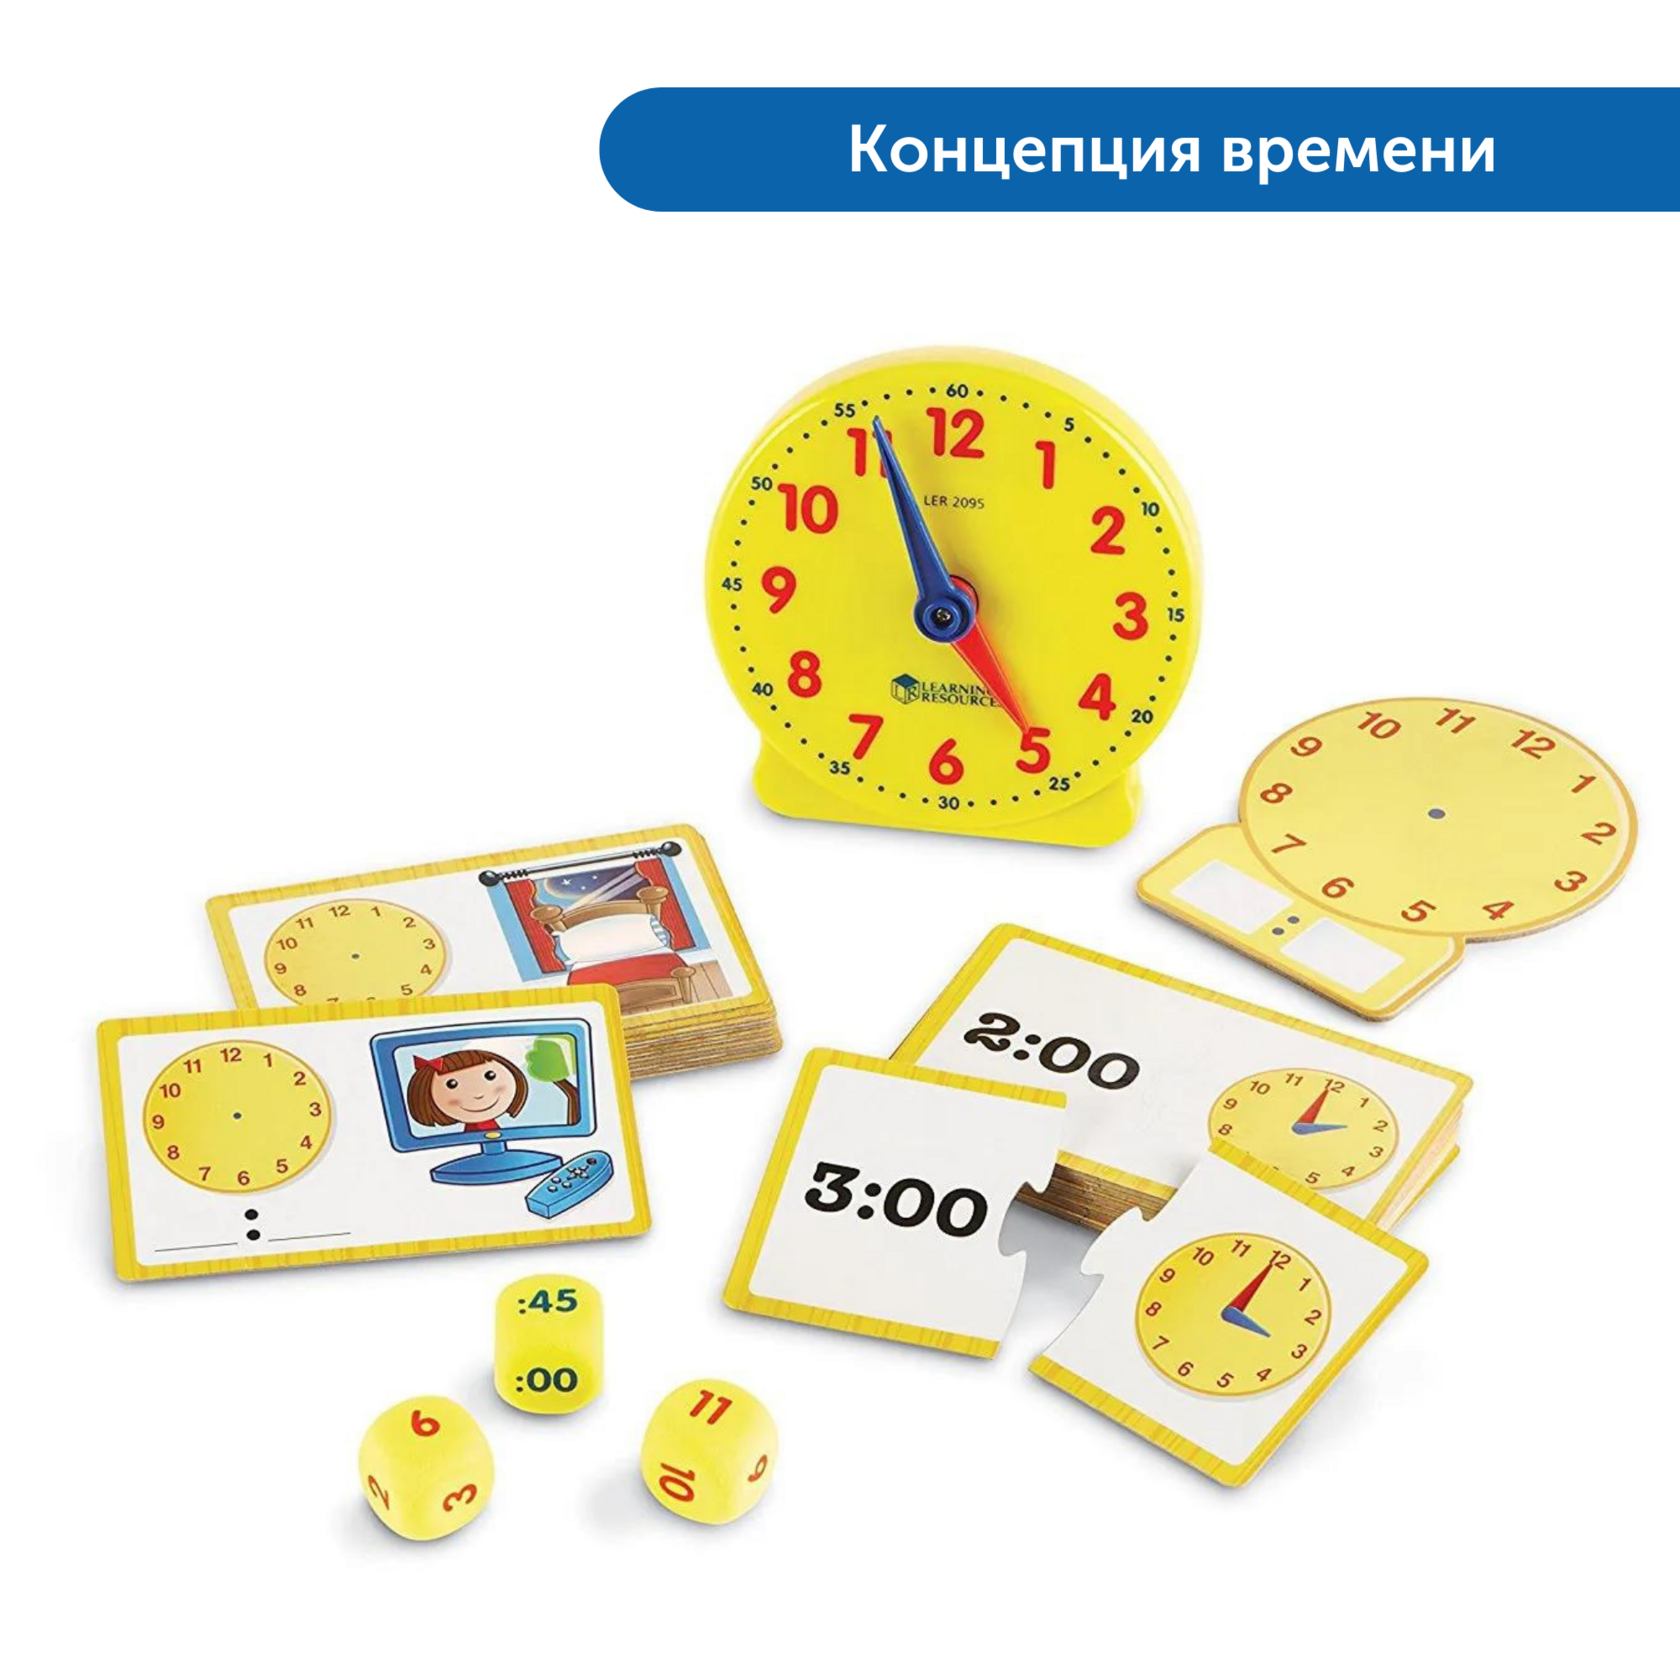 Activity resources. Часы для изучения. Игрушка для изучения часов. Часы игрушка для детей обучающие. Часы учебные для детей.